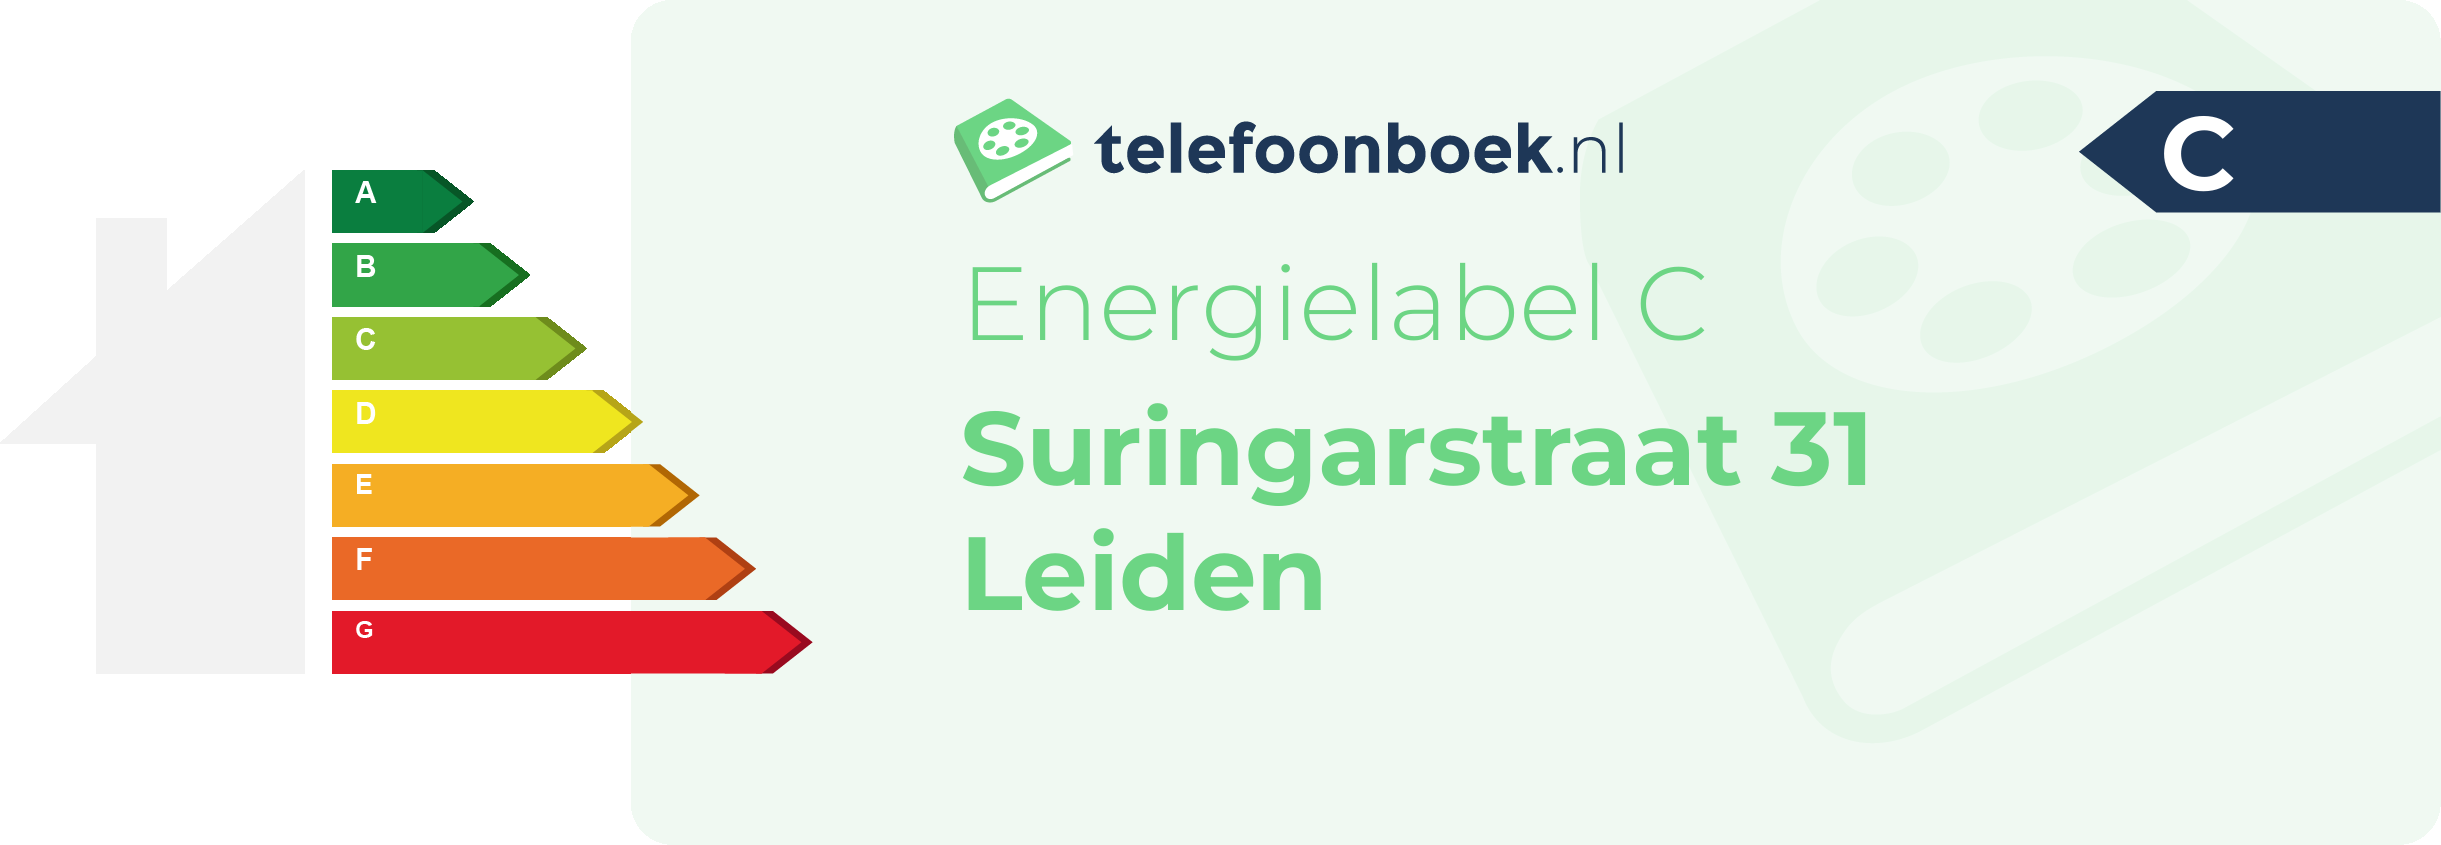 Energielabel Suringarstraat 31 Leiden